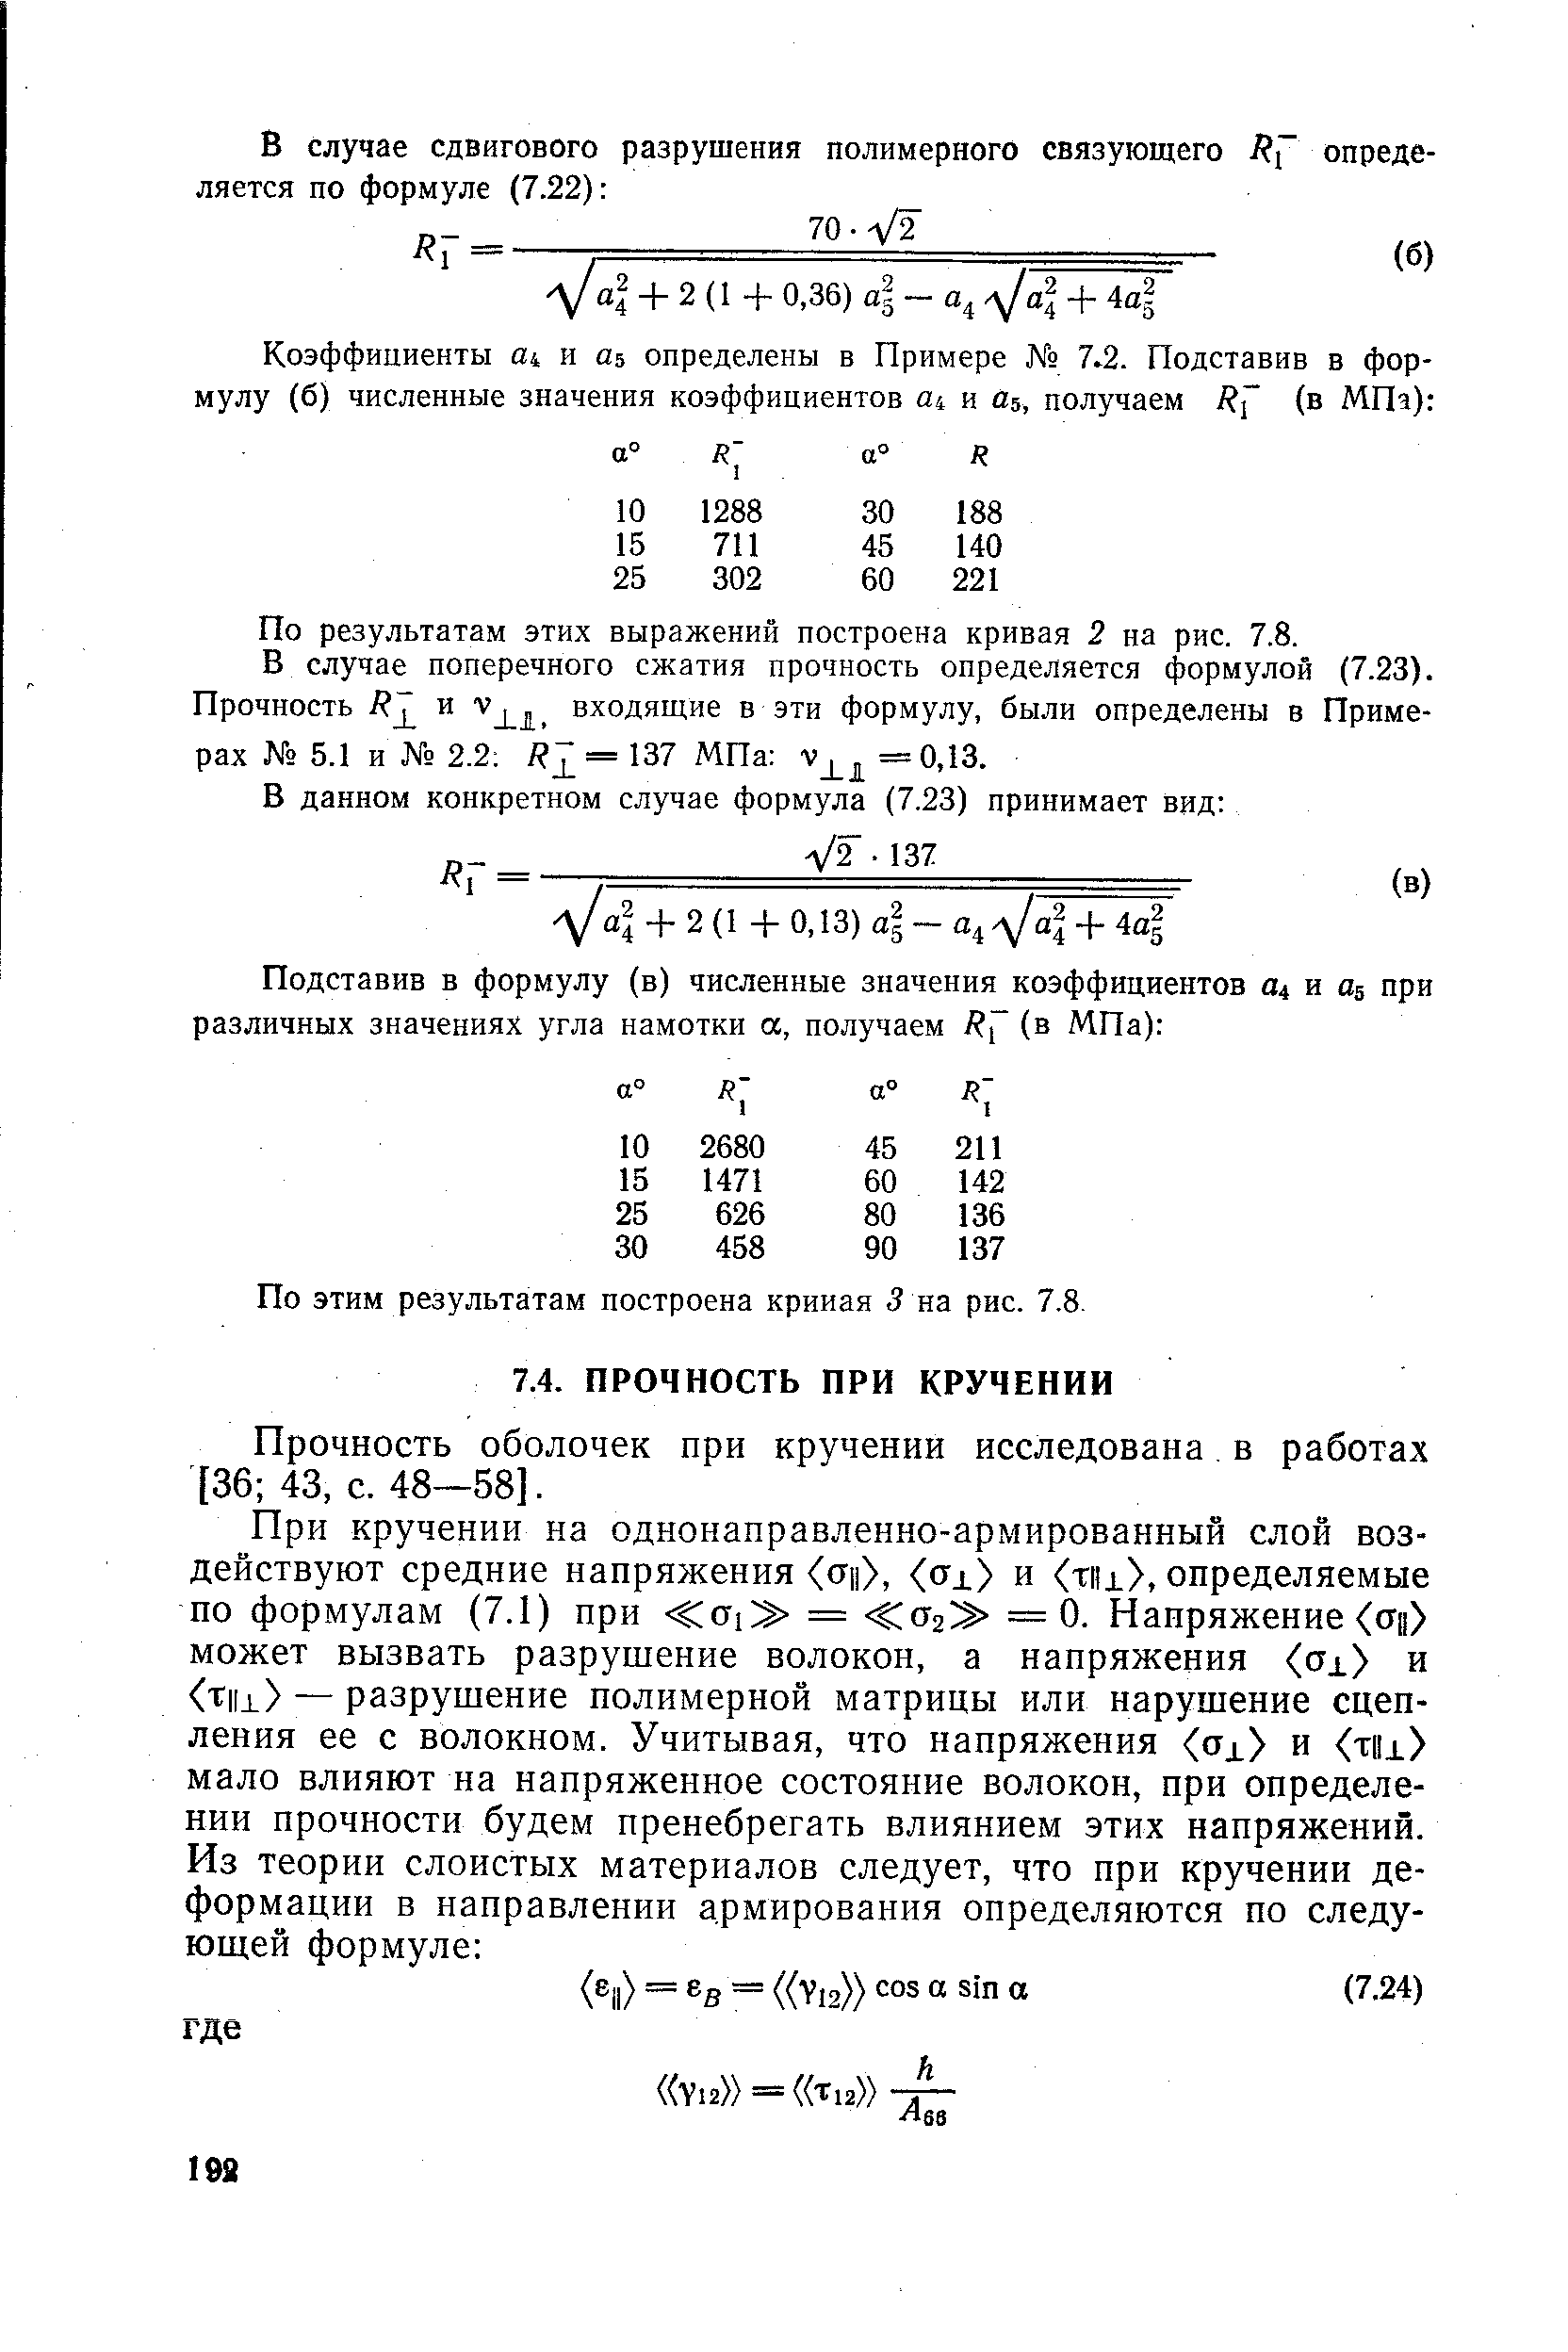 Прочность оболочек при кручении исследована в работах [36 43, с. 48—58].
